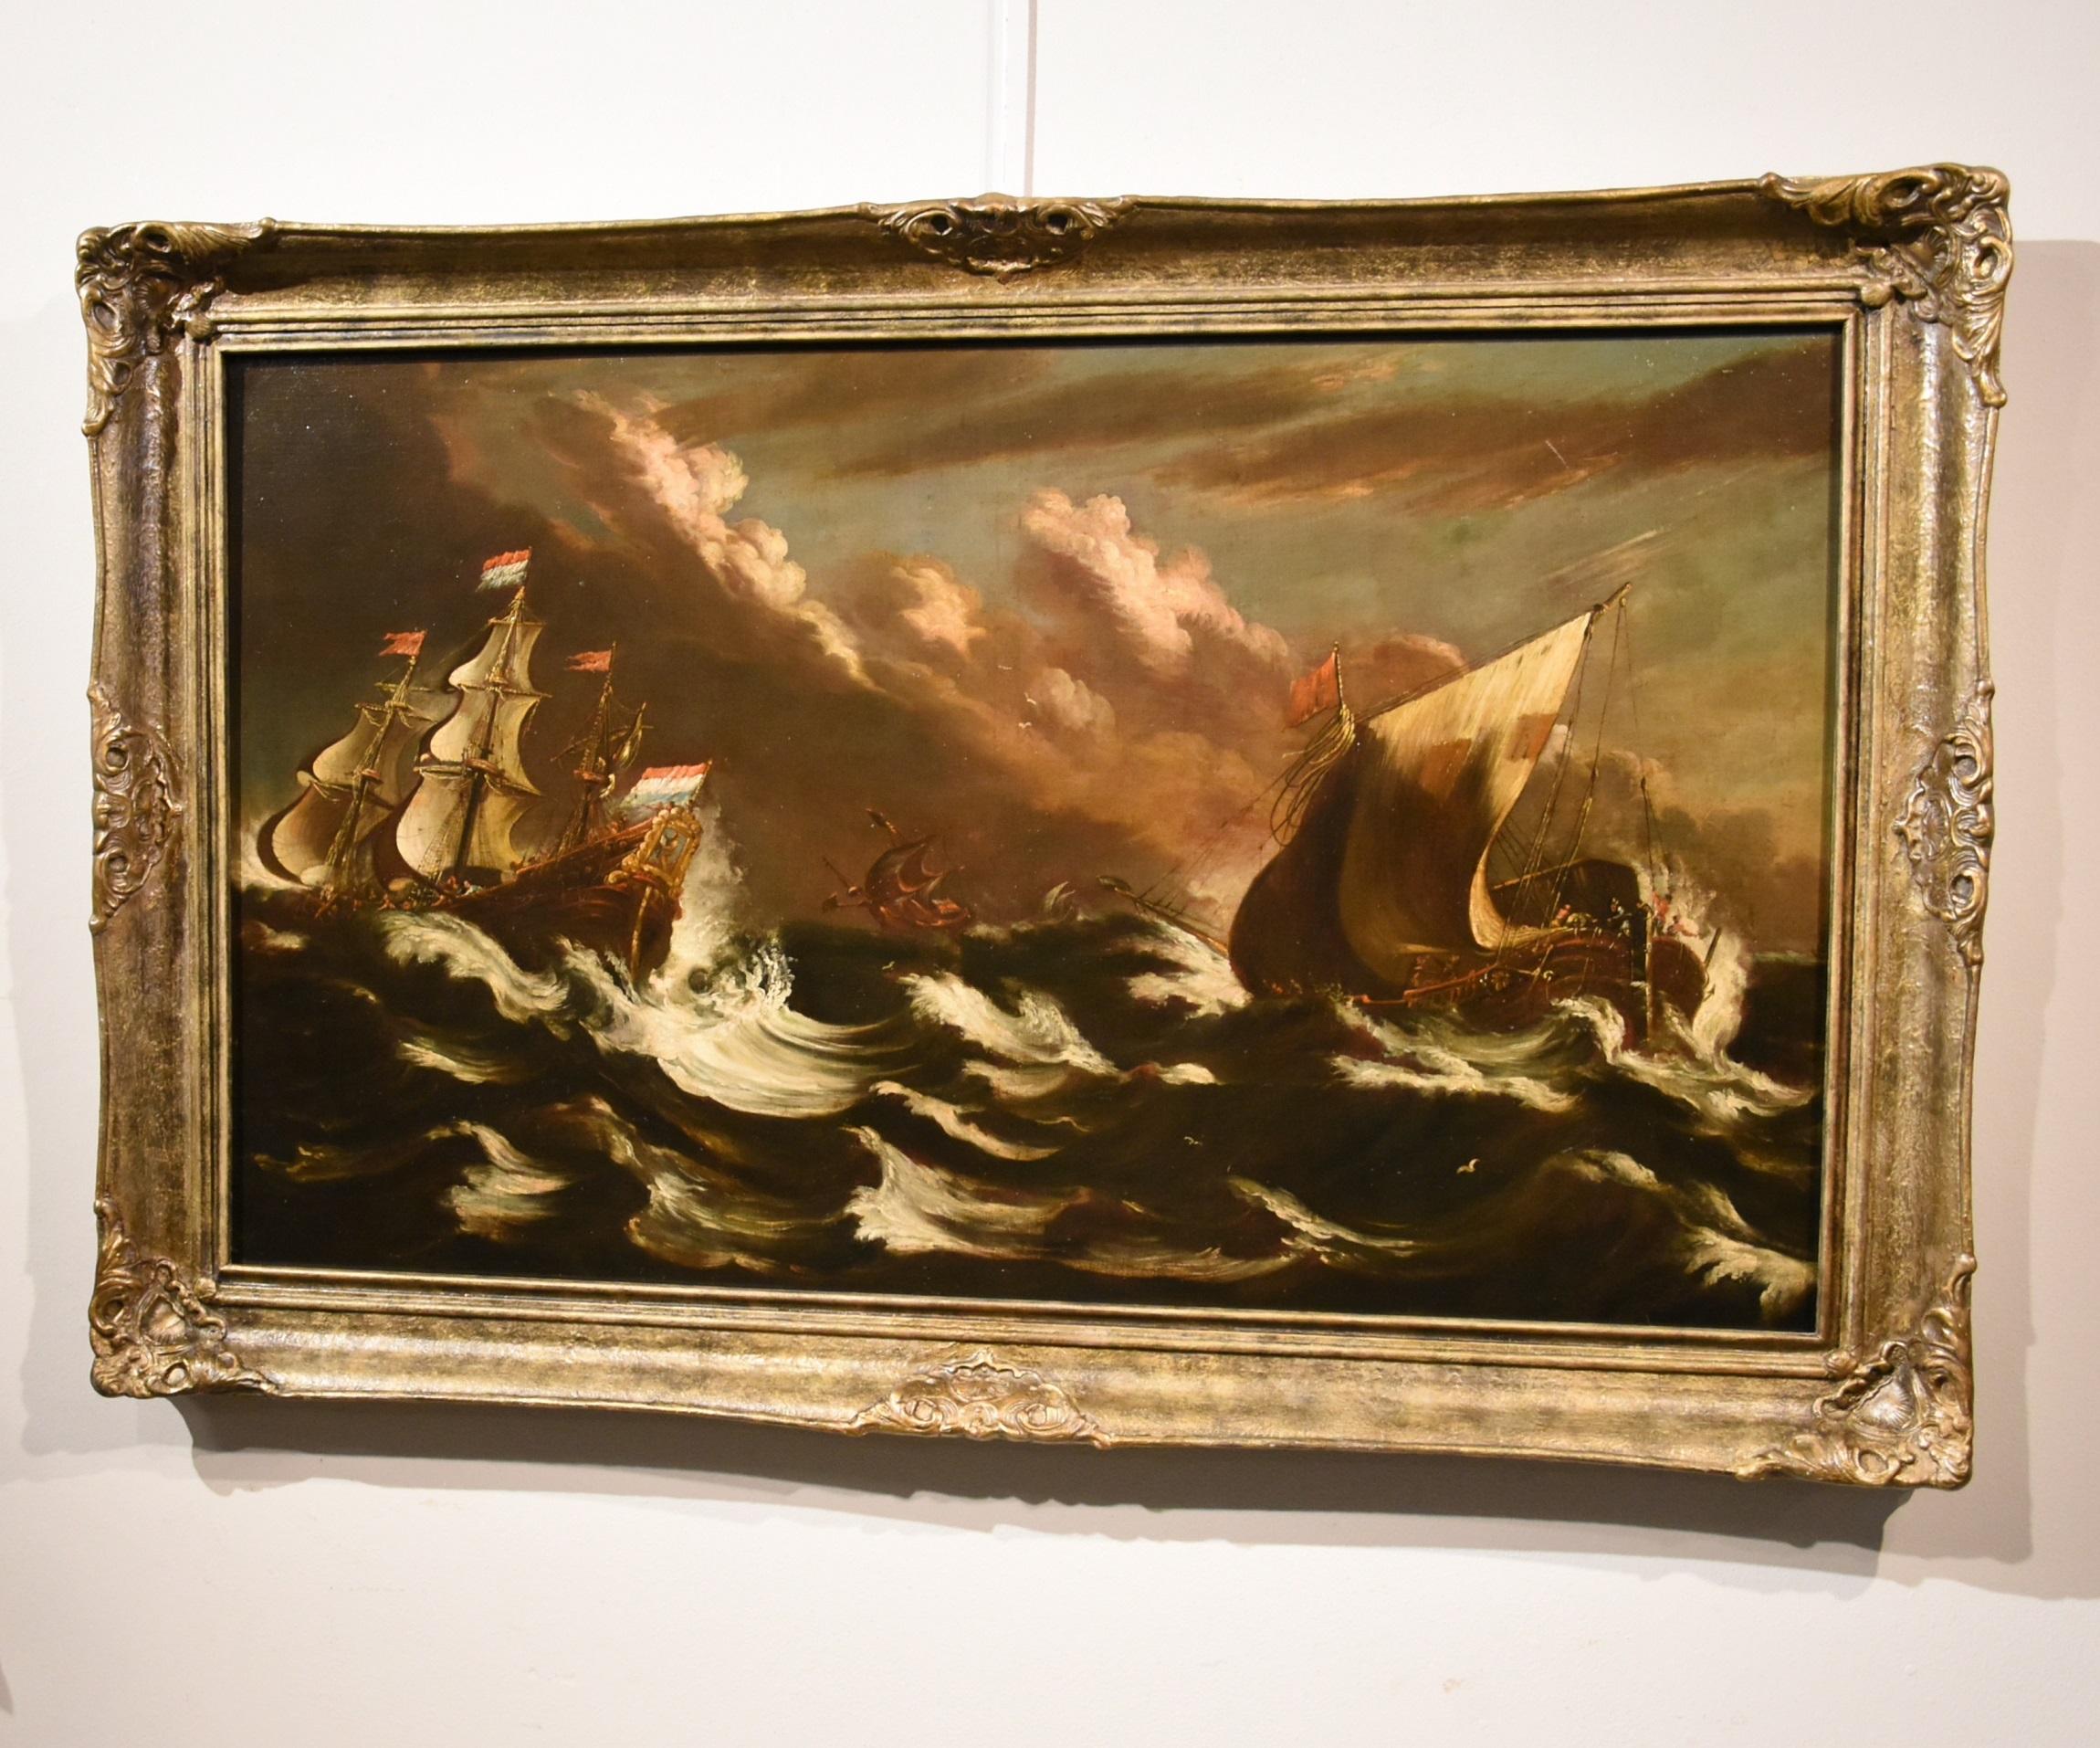 Stormy Ships Van Plattenberg Marina, Gemälde Öl auf Leinwand, Alter Meister, 17. Jahrhundert  (Alte Meister), Painting, von Matthieu Van Plattenberg known as Platte-Montagne (Antwerp 1608 - Paris 1660)